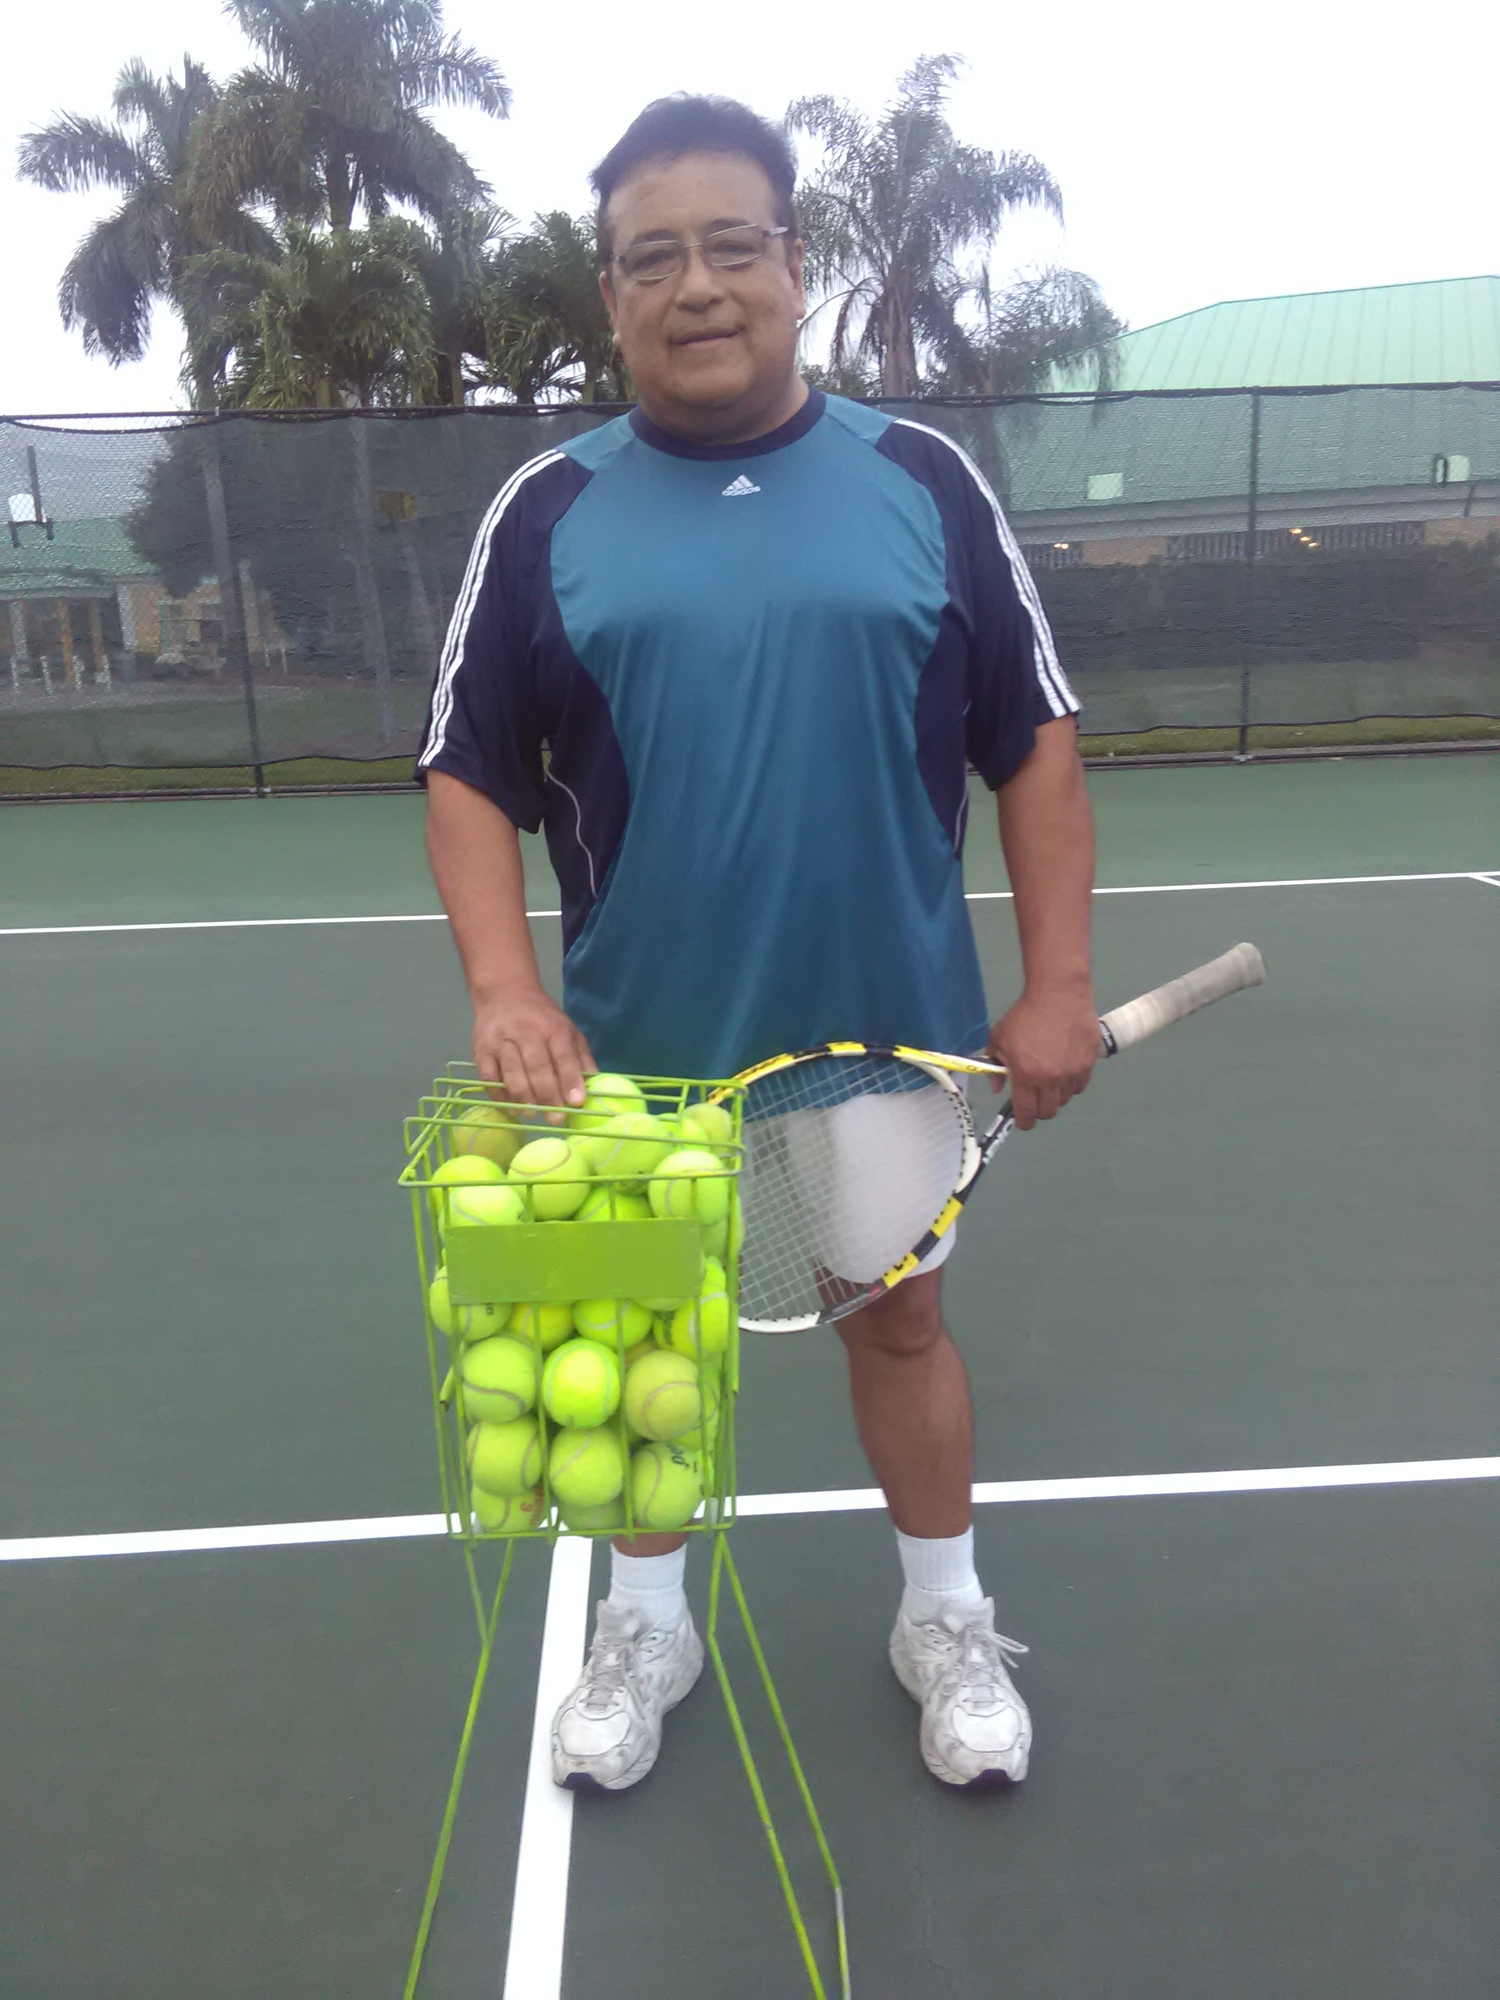 Jose X. teaches tennis lessons in Hialeah, FL